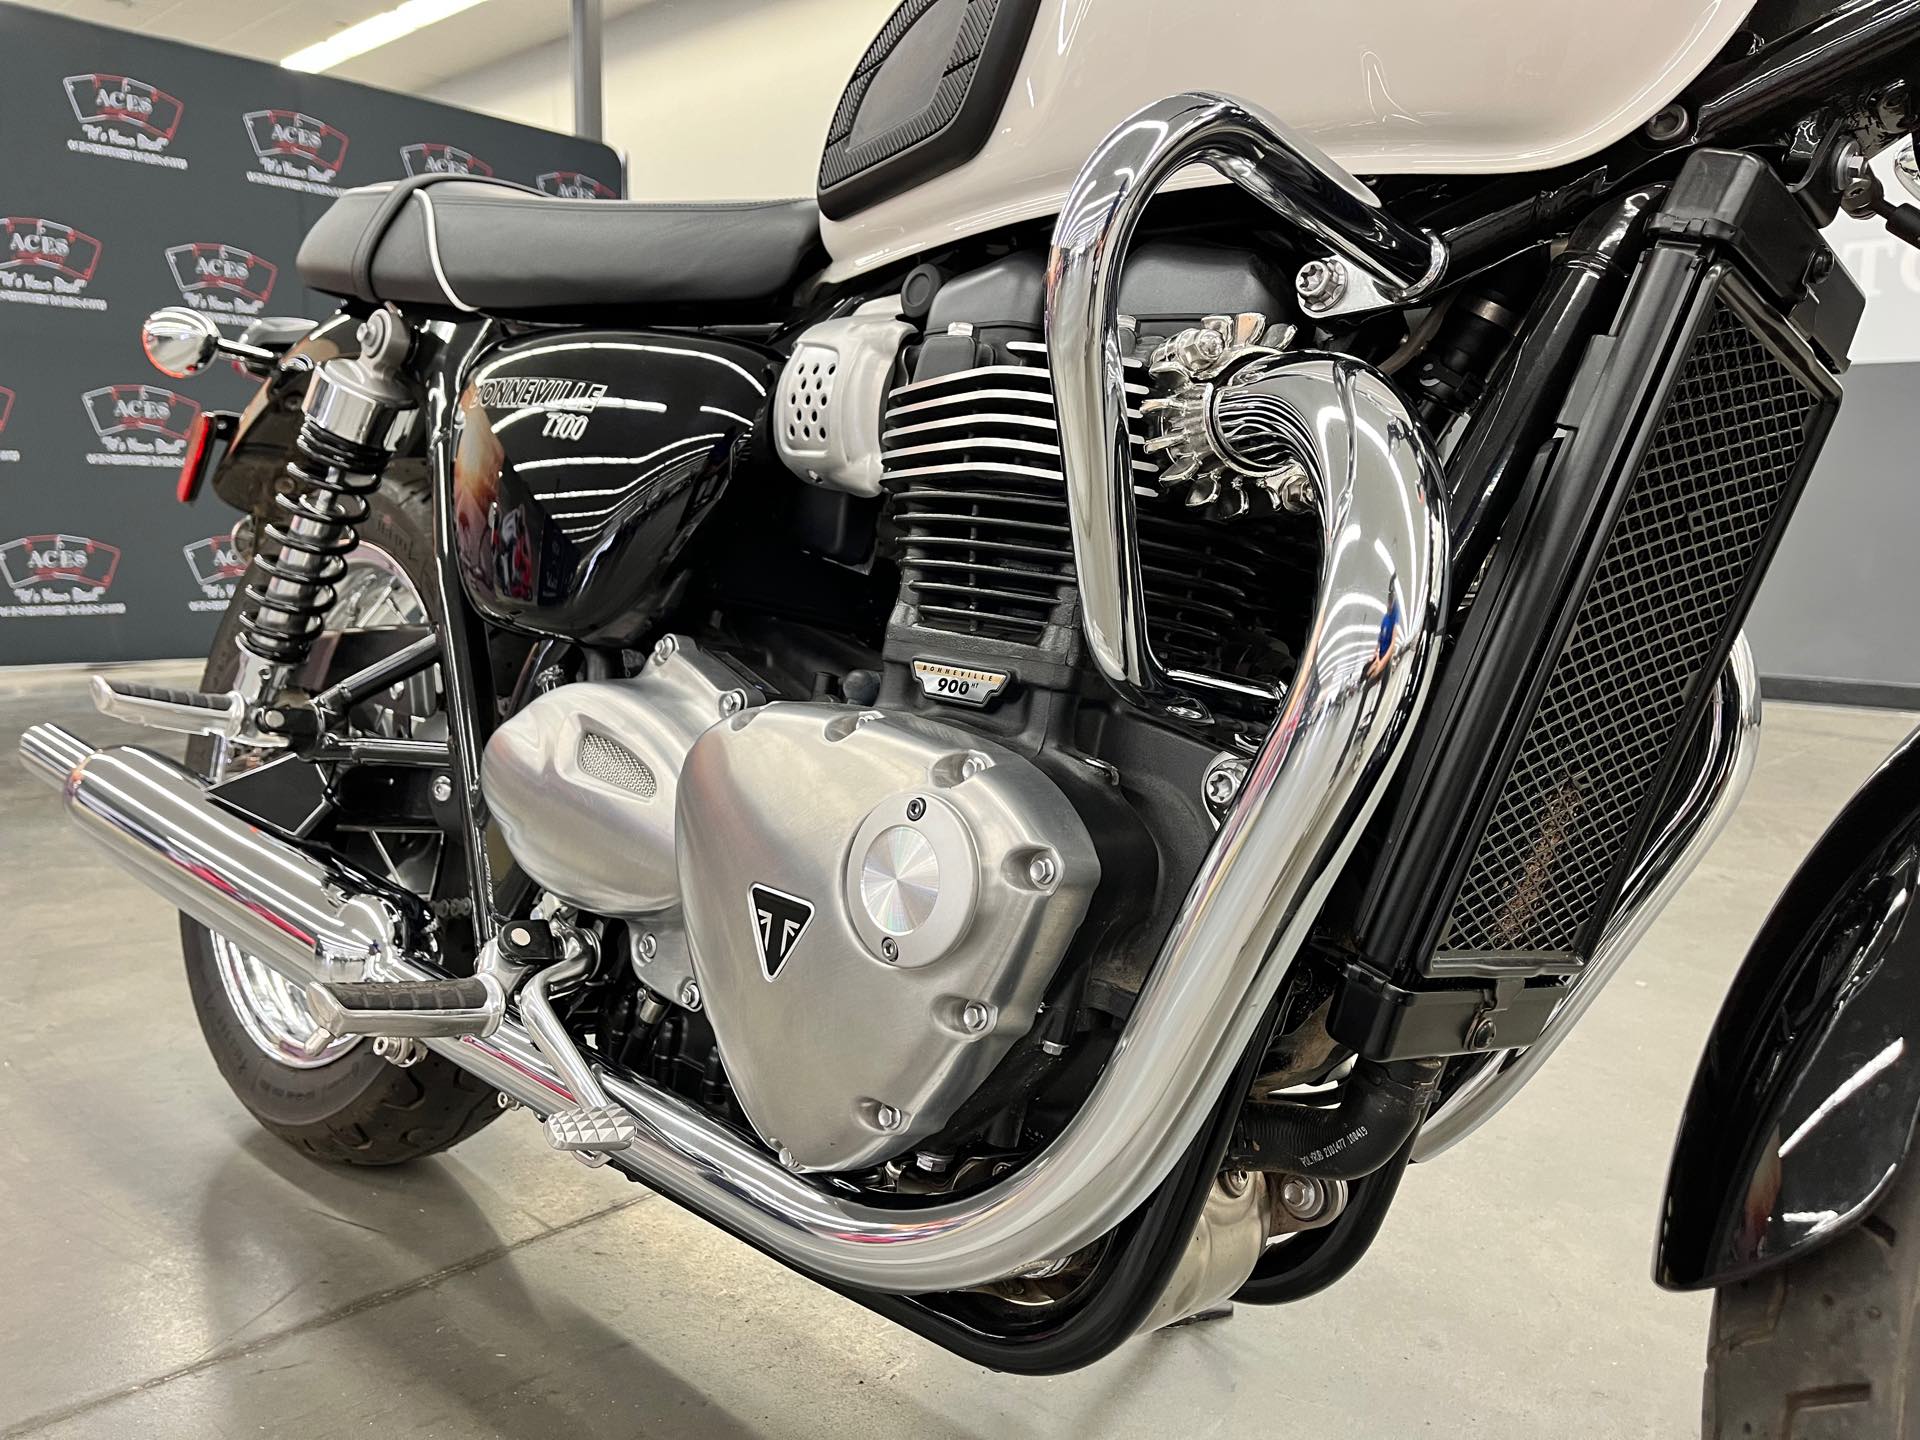 2020 Triumph Bonneville T100 Base at Aces Motorcycles - Denver